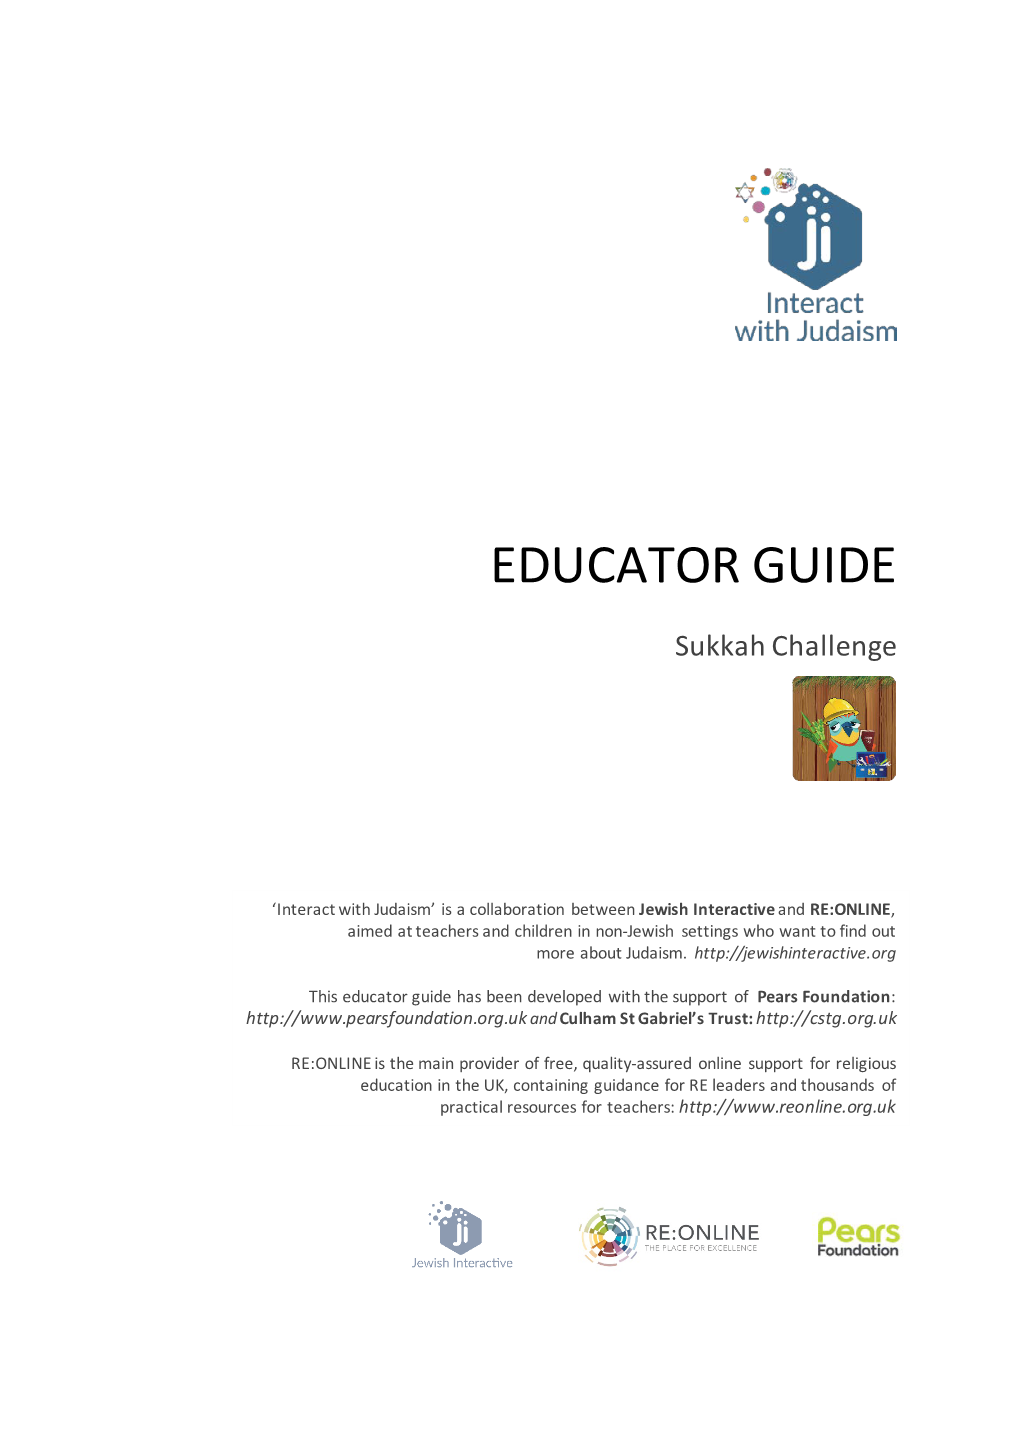 Educator Guide